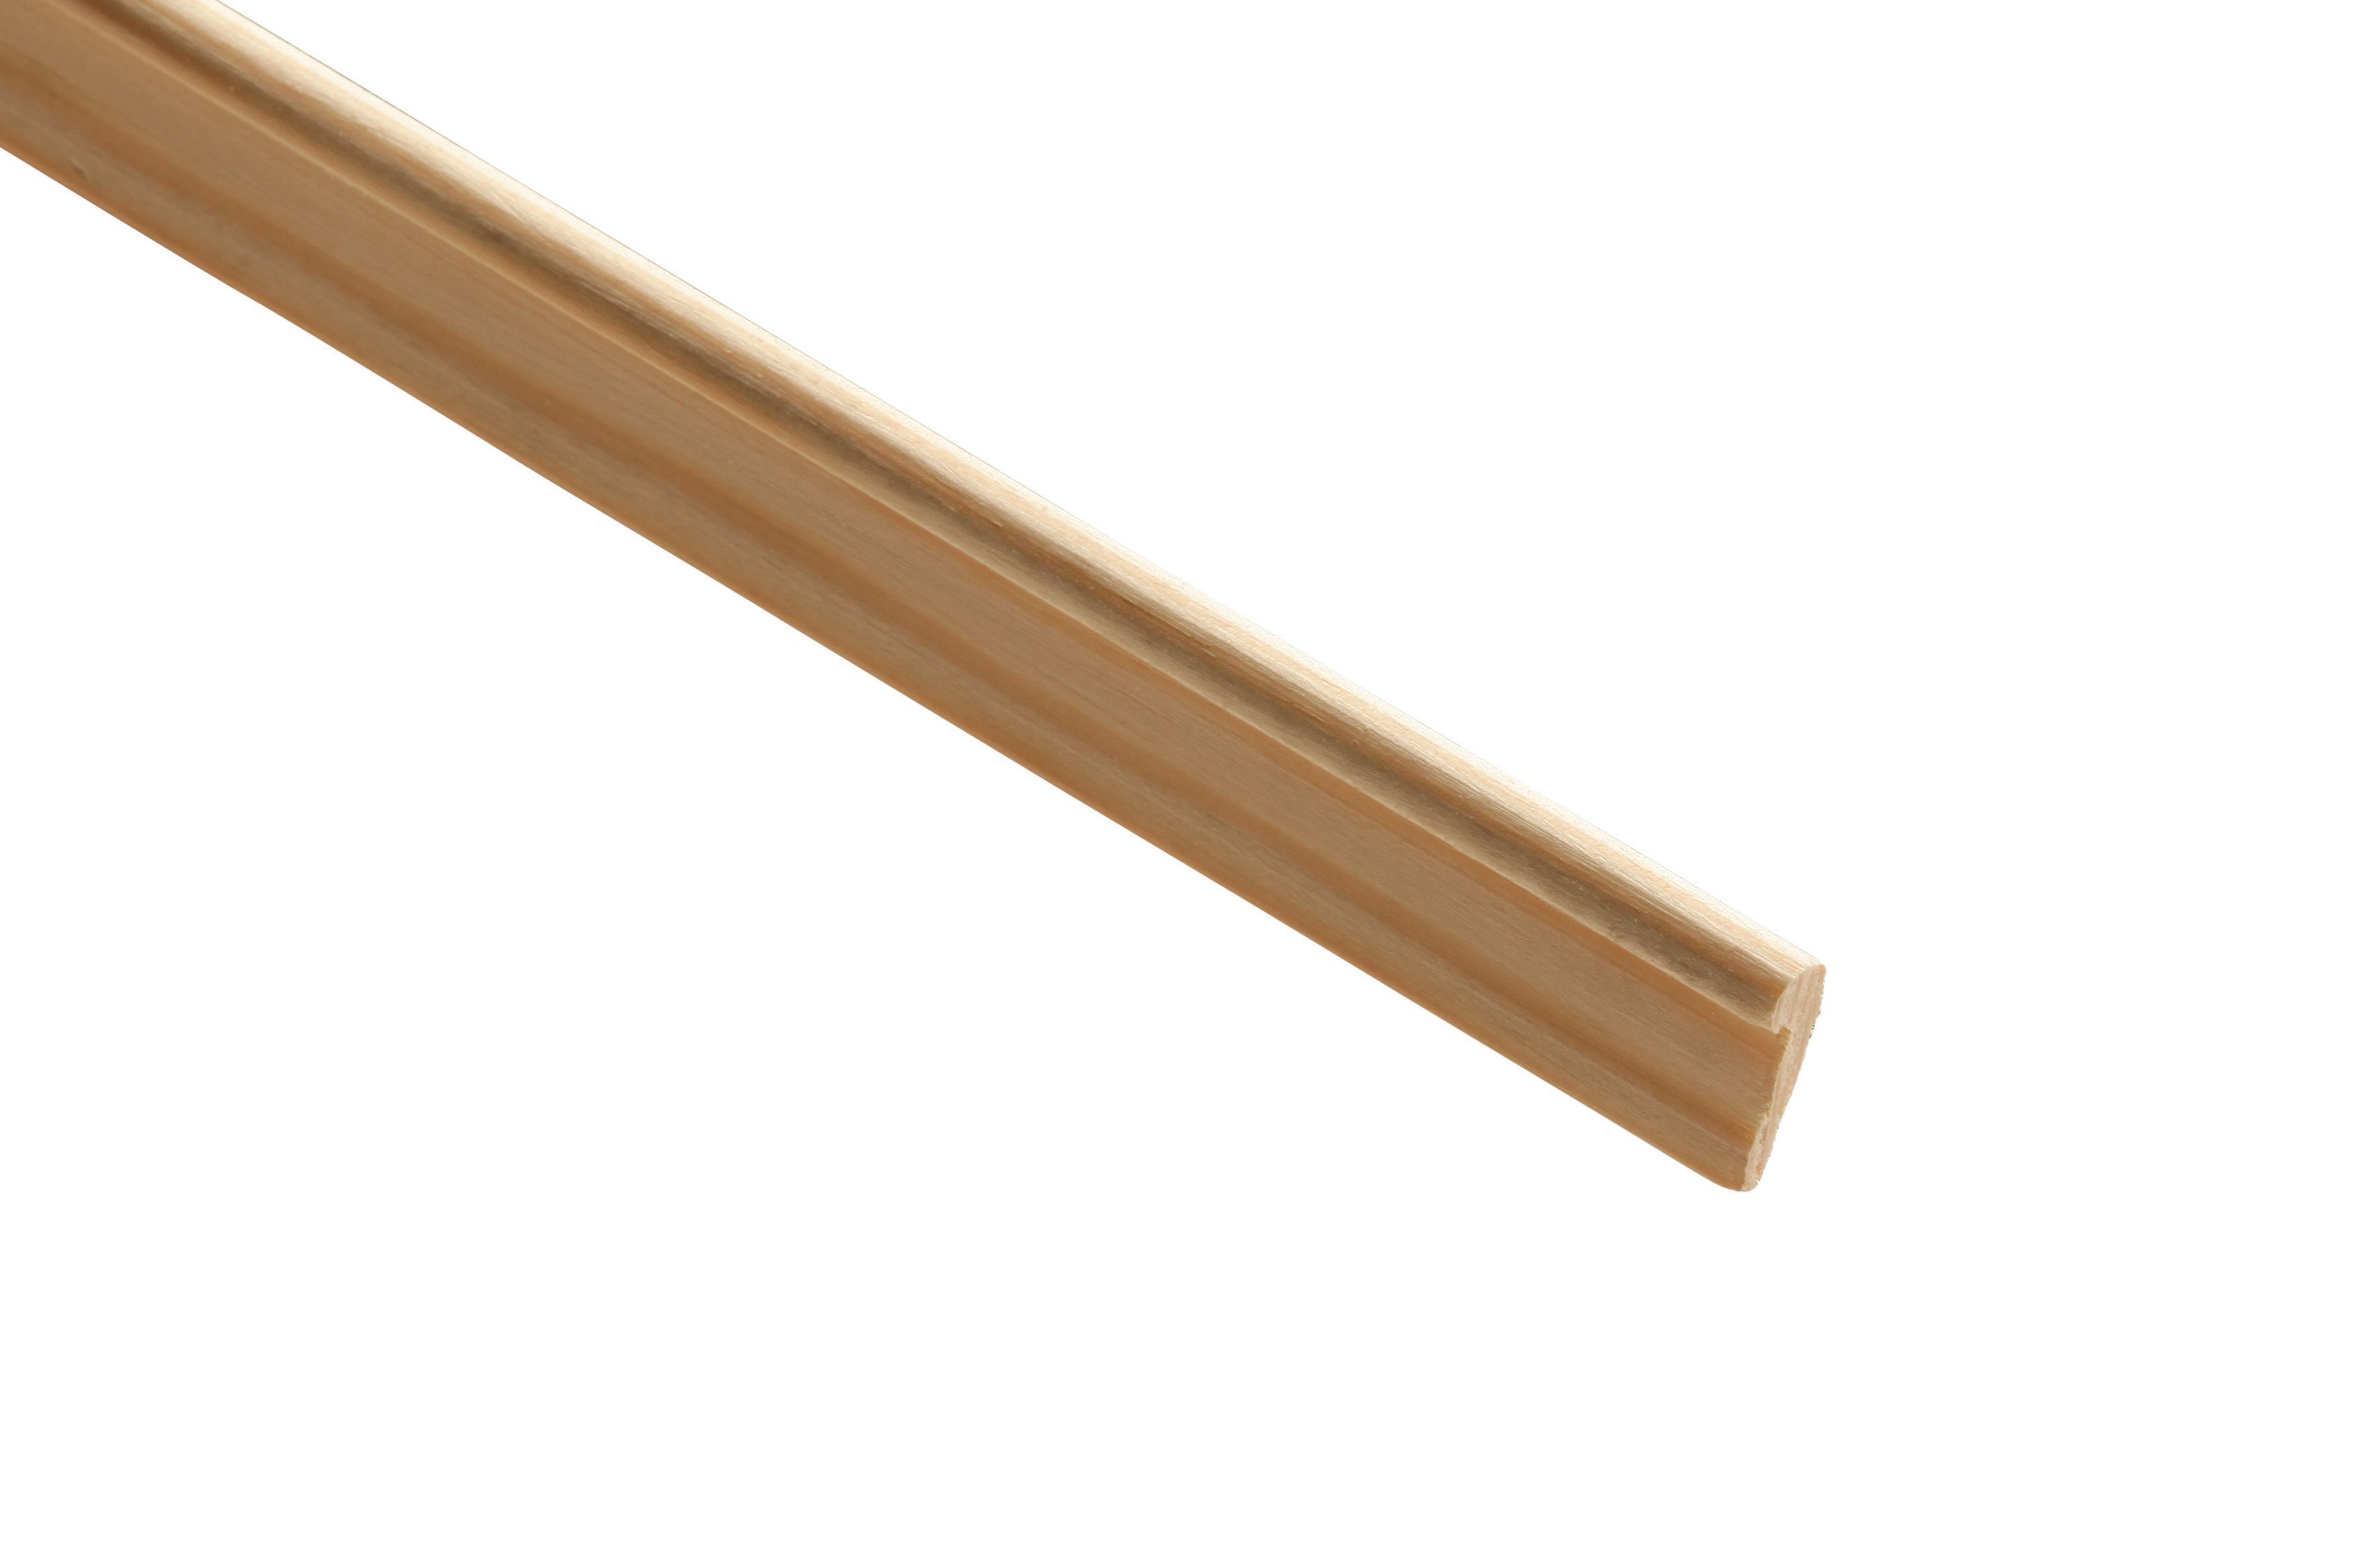 Wickes Pine Hockey Stick Moulding - 20 x 8 x 2400mm